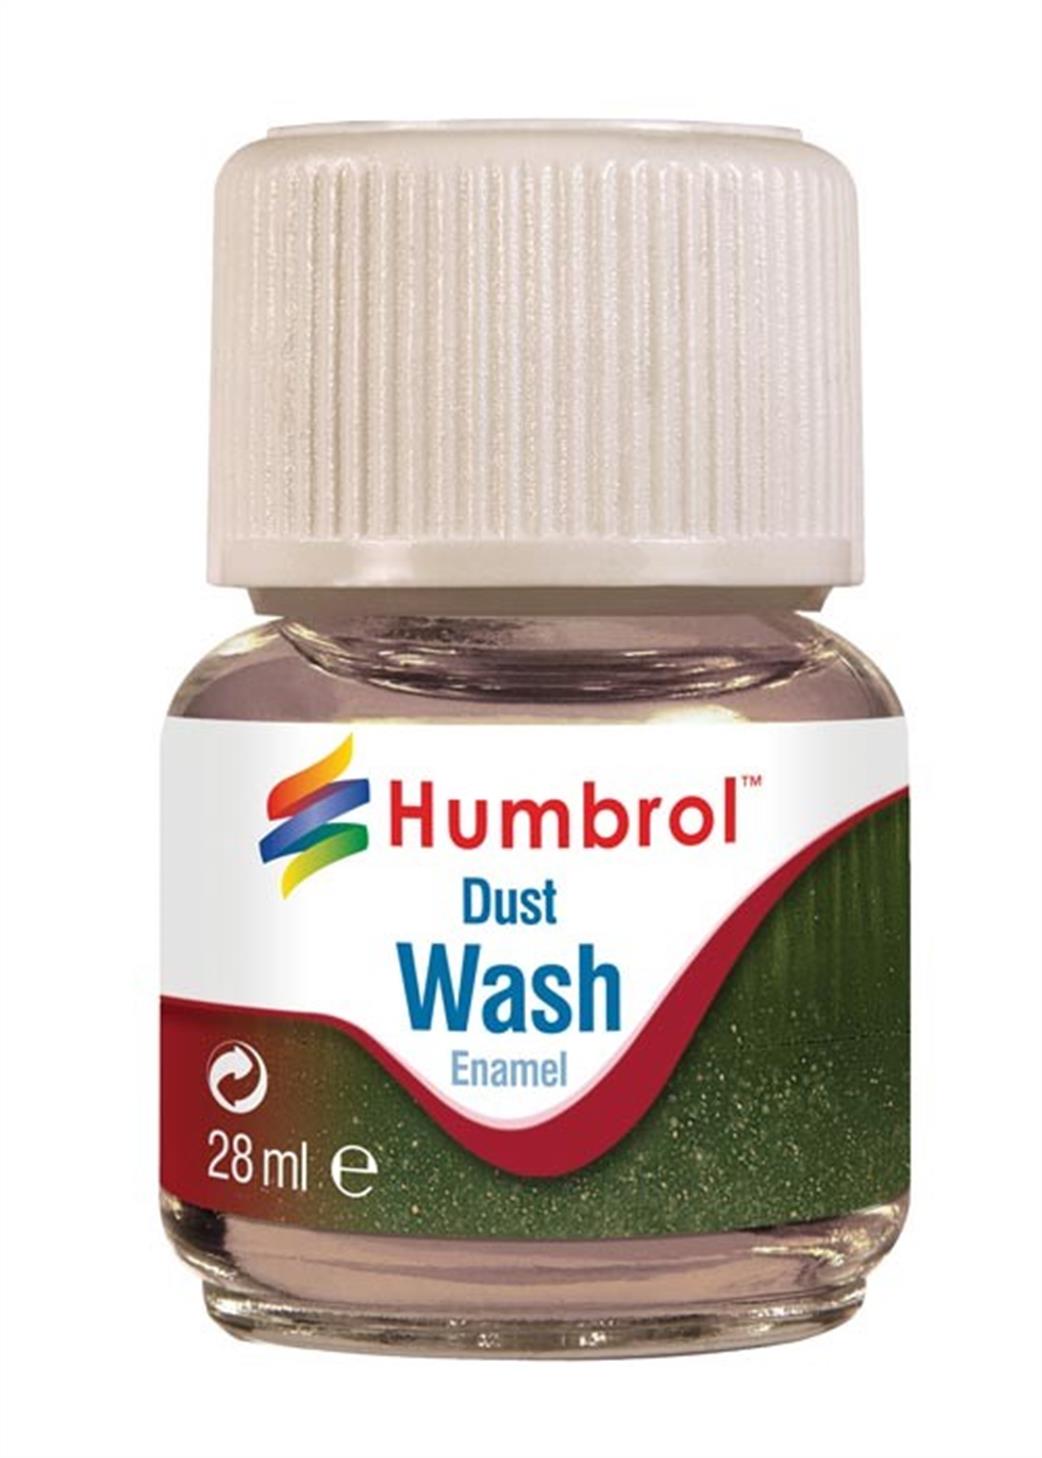 Humbrol  AV0208 Dust Enamel Wash 28ml Bottle